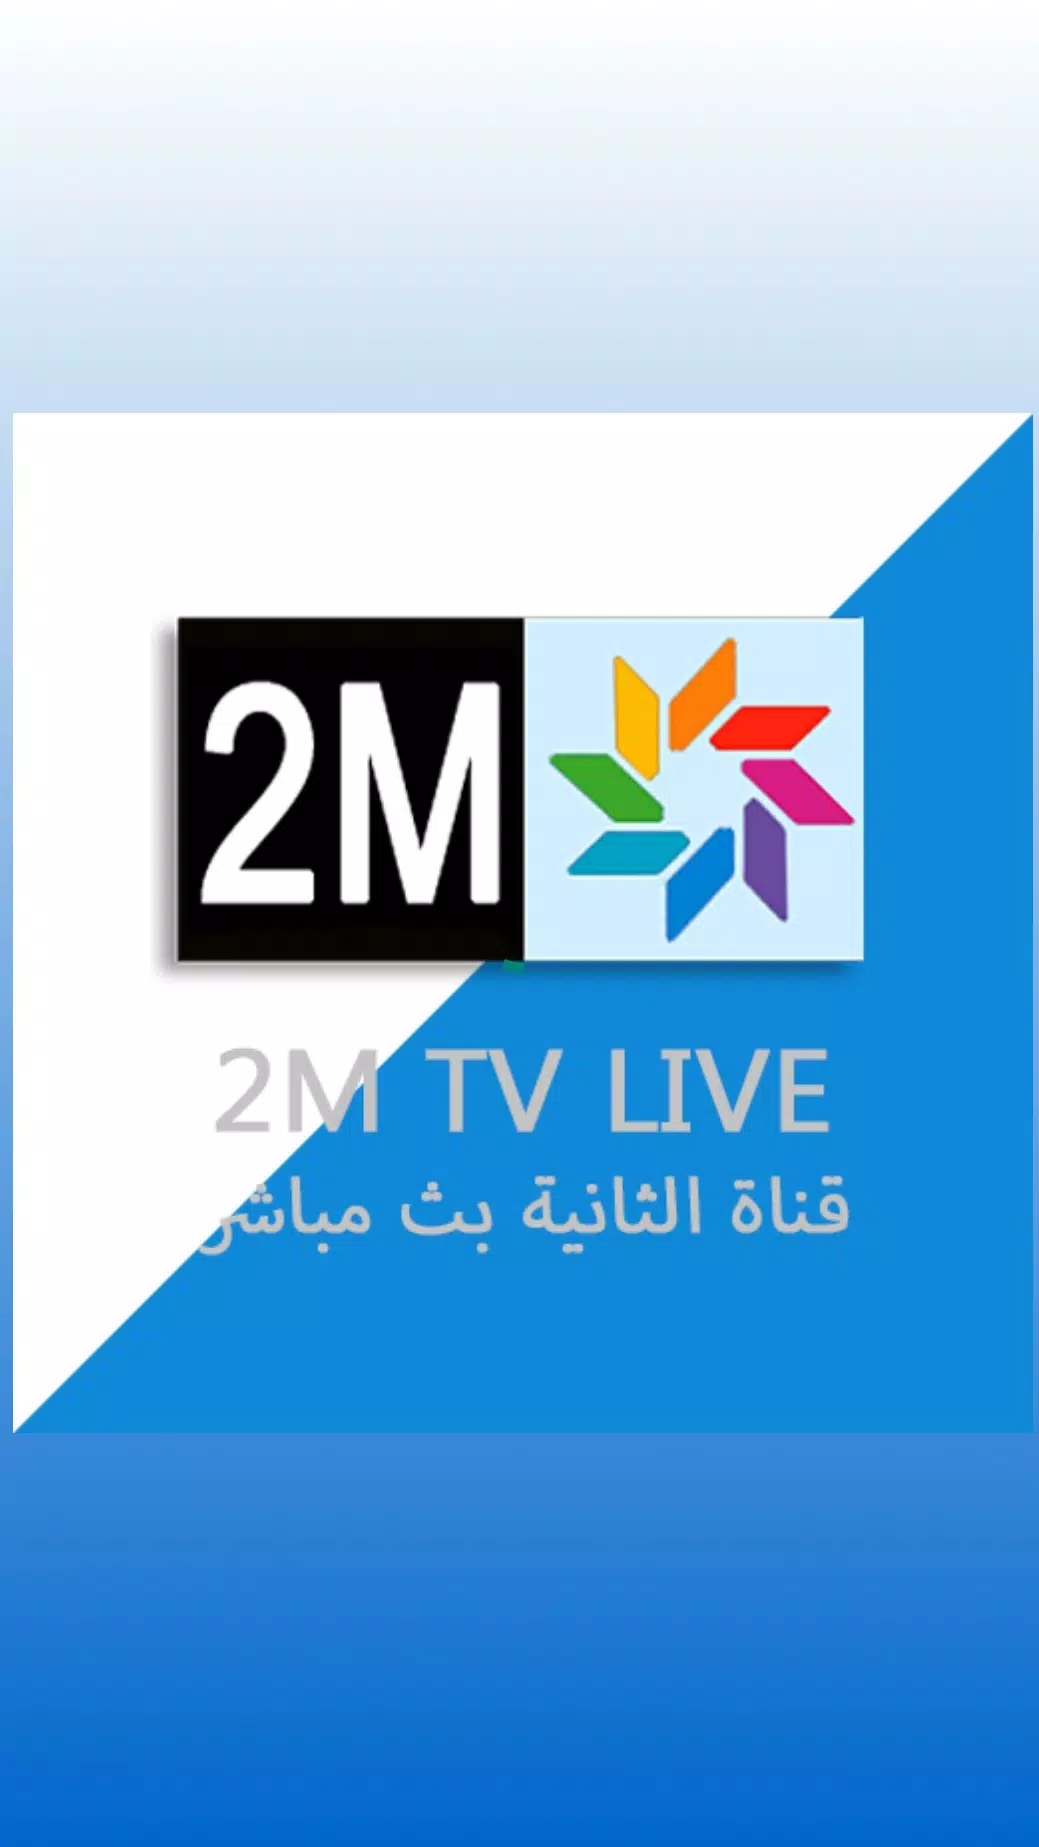 بث مباشر دوزام - 2M TV LIVE APK for Android Download